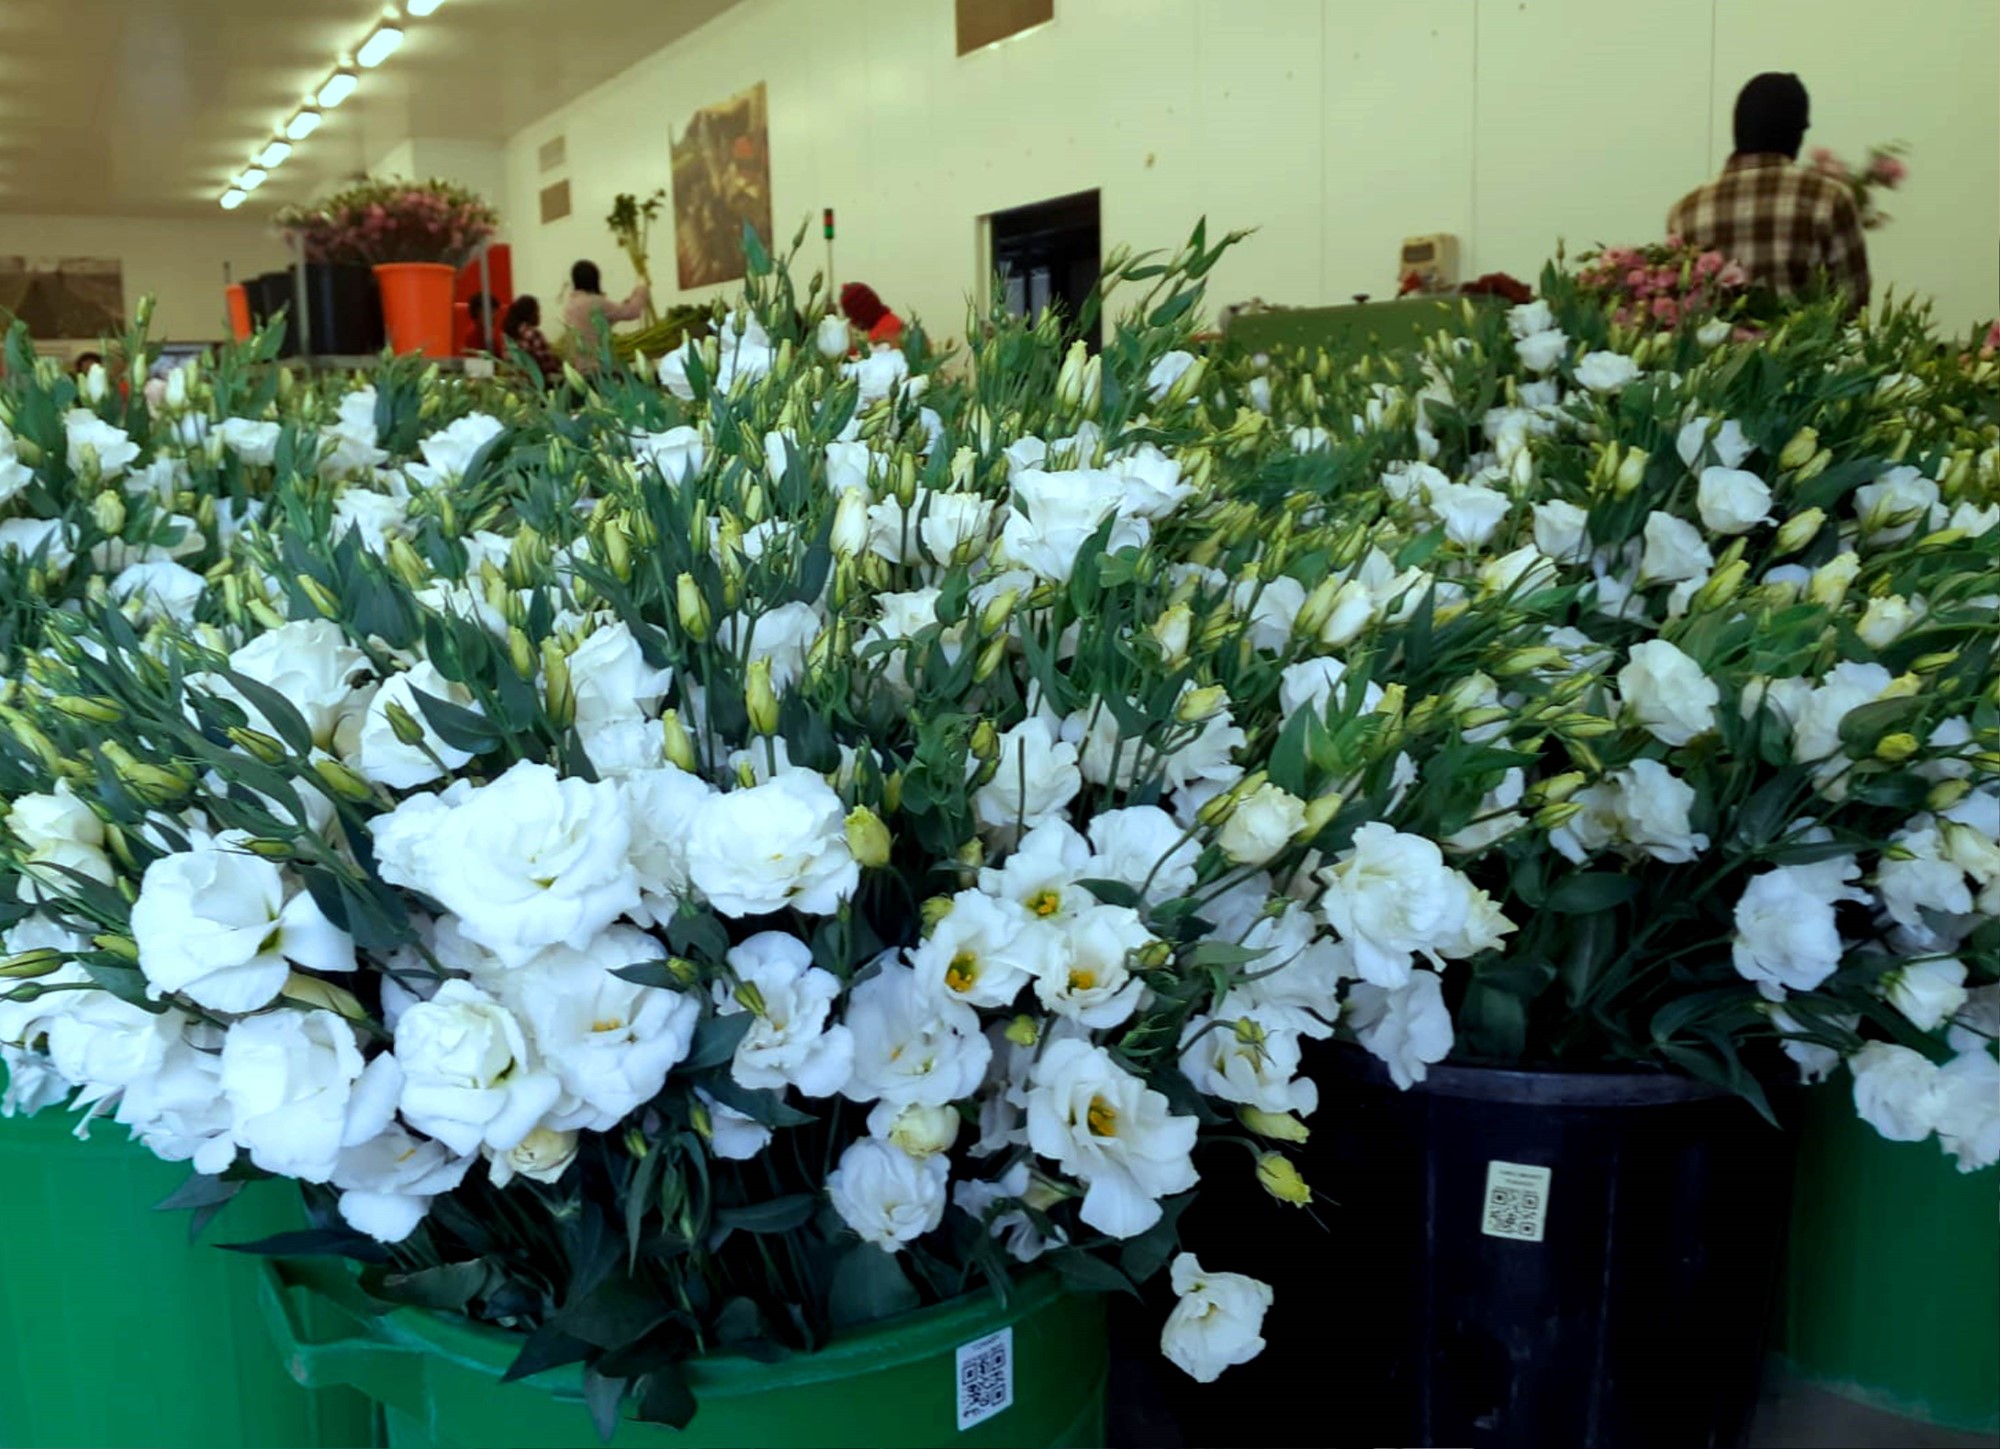 10 מיליון פרחים וענפי קישוט נשלחו לאירופה  מישראל והערבה התיכונה  משלוחי הקרגו המיוחדים יוטסו עד לערב חג המולד